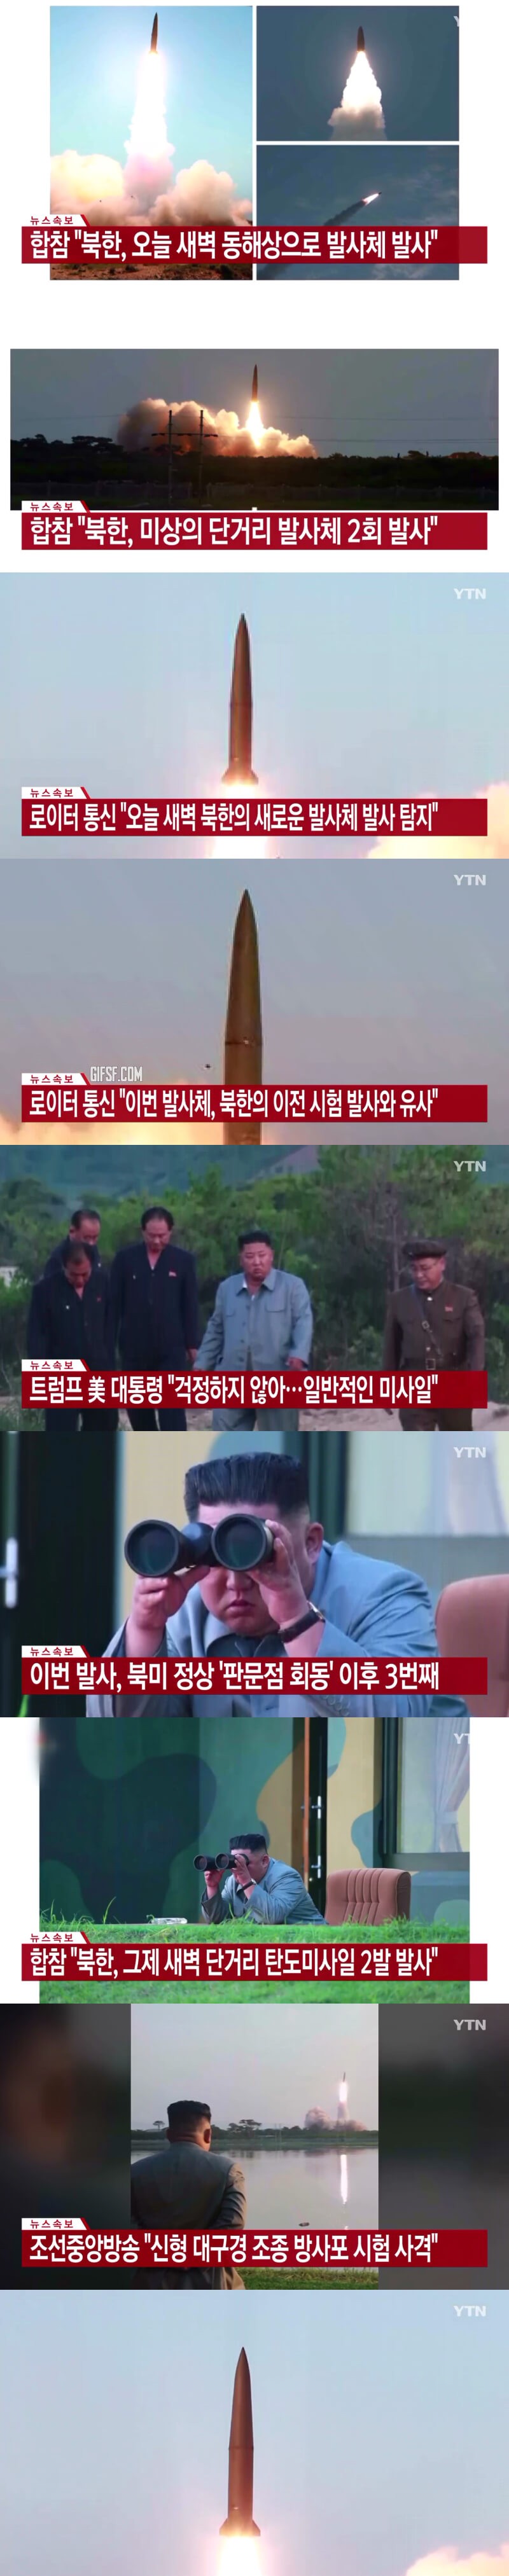 북한, 오늘 새벽 또 발사체 발사 .jpg